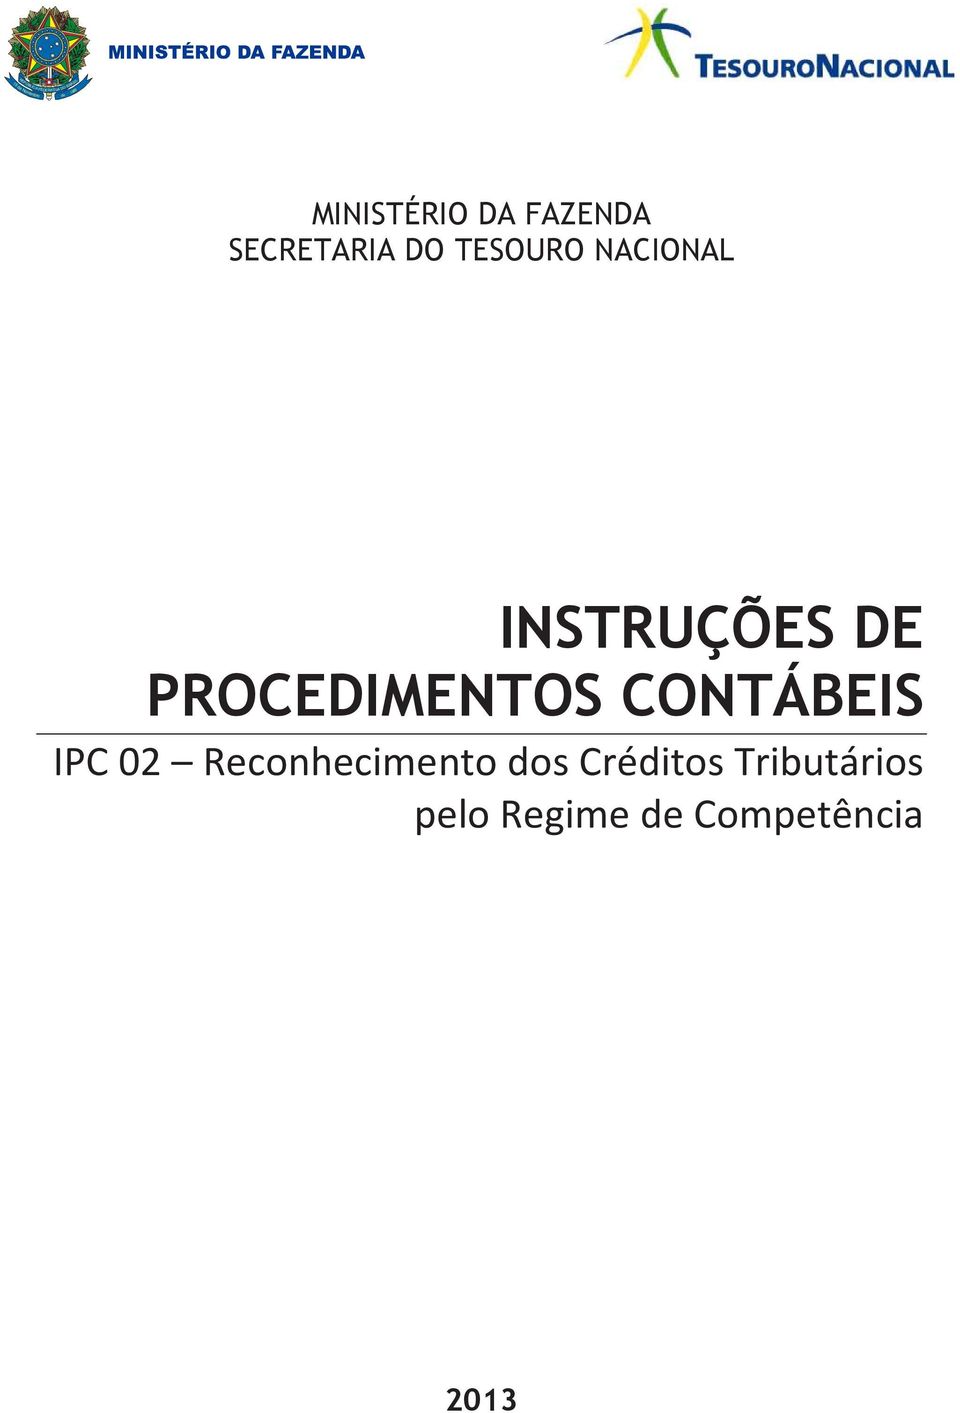 INSTRUÇÕES DE PROCEDIMENTOS CONTÁBEIS IPC 02